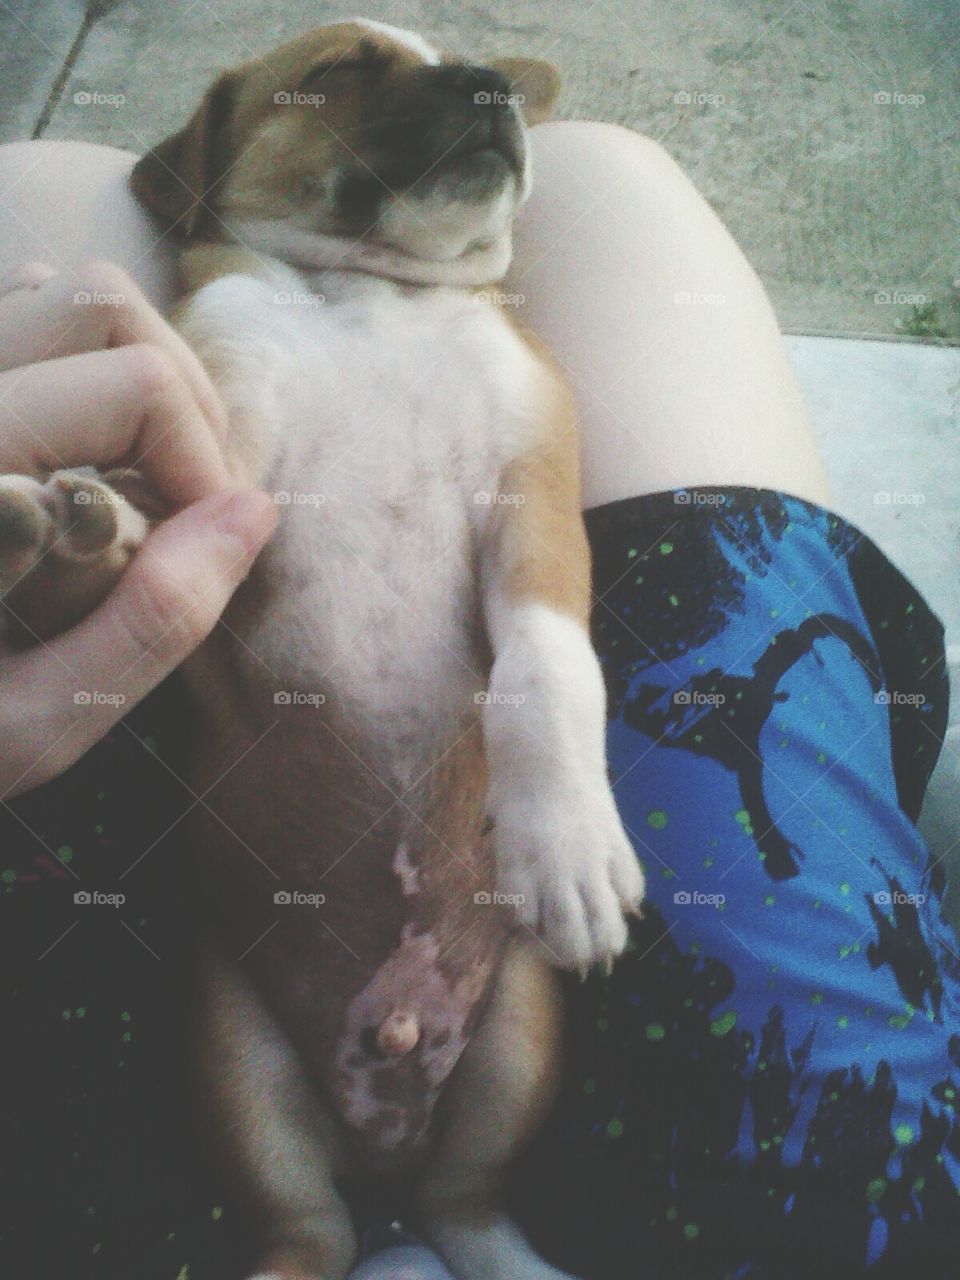 Cute lil dog
Perrito lindo dormido en mis piernas.